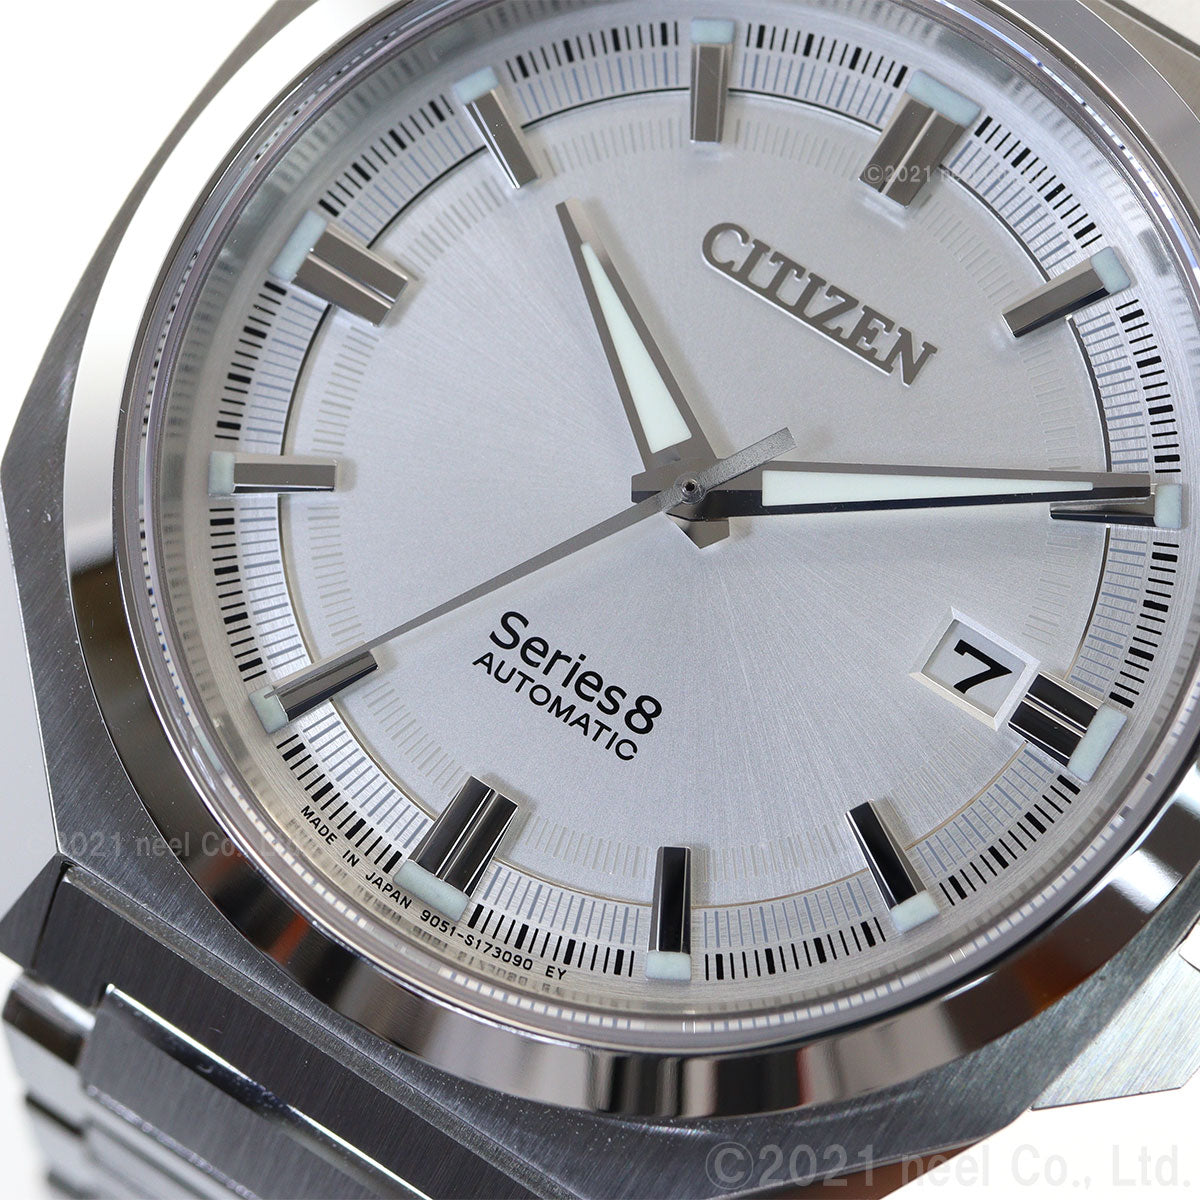 シチズン シリーズエイト CITIZEN Series 8 メカニカル 831 自動巻き 機械式 腕時計 メンズ NB6010-81A